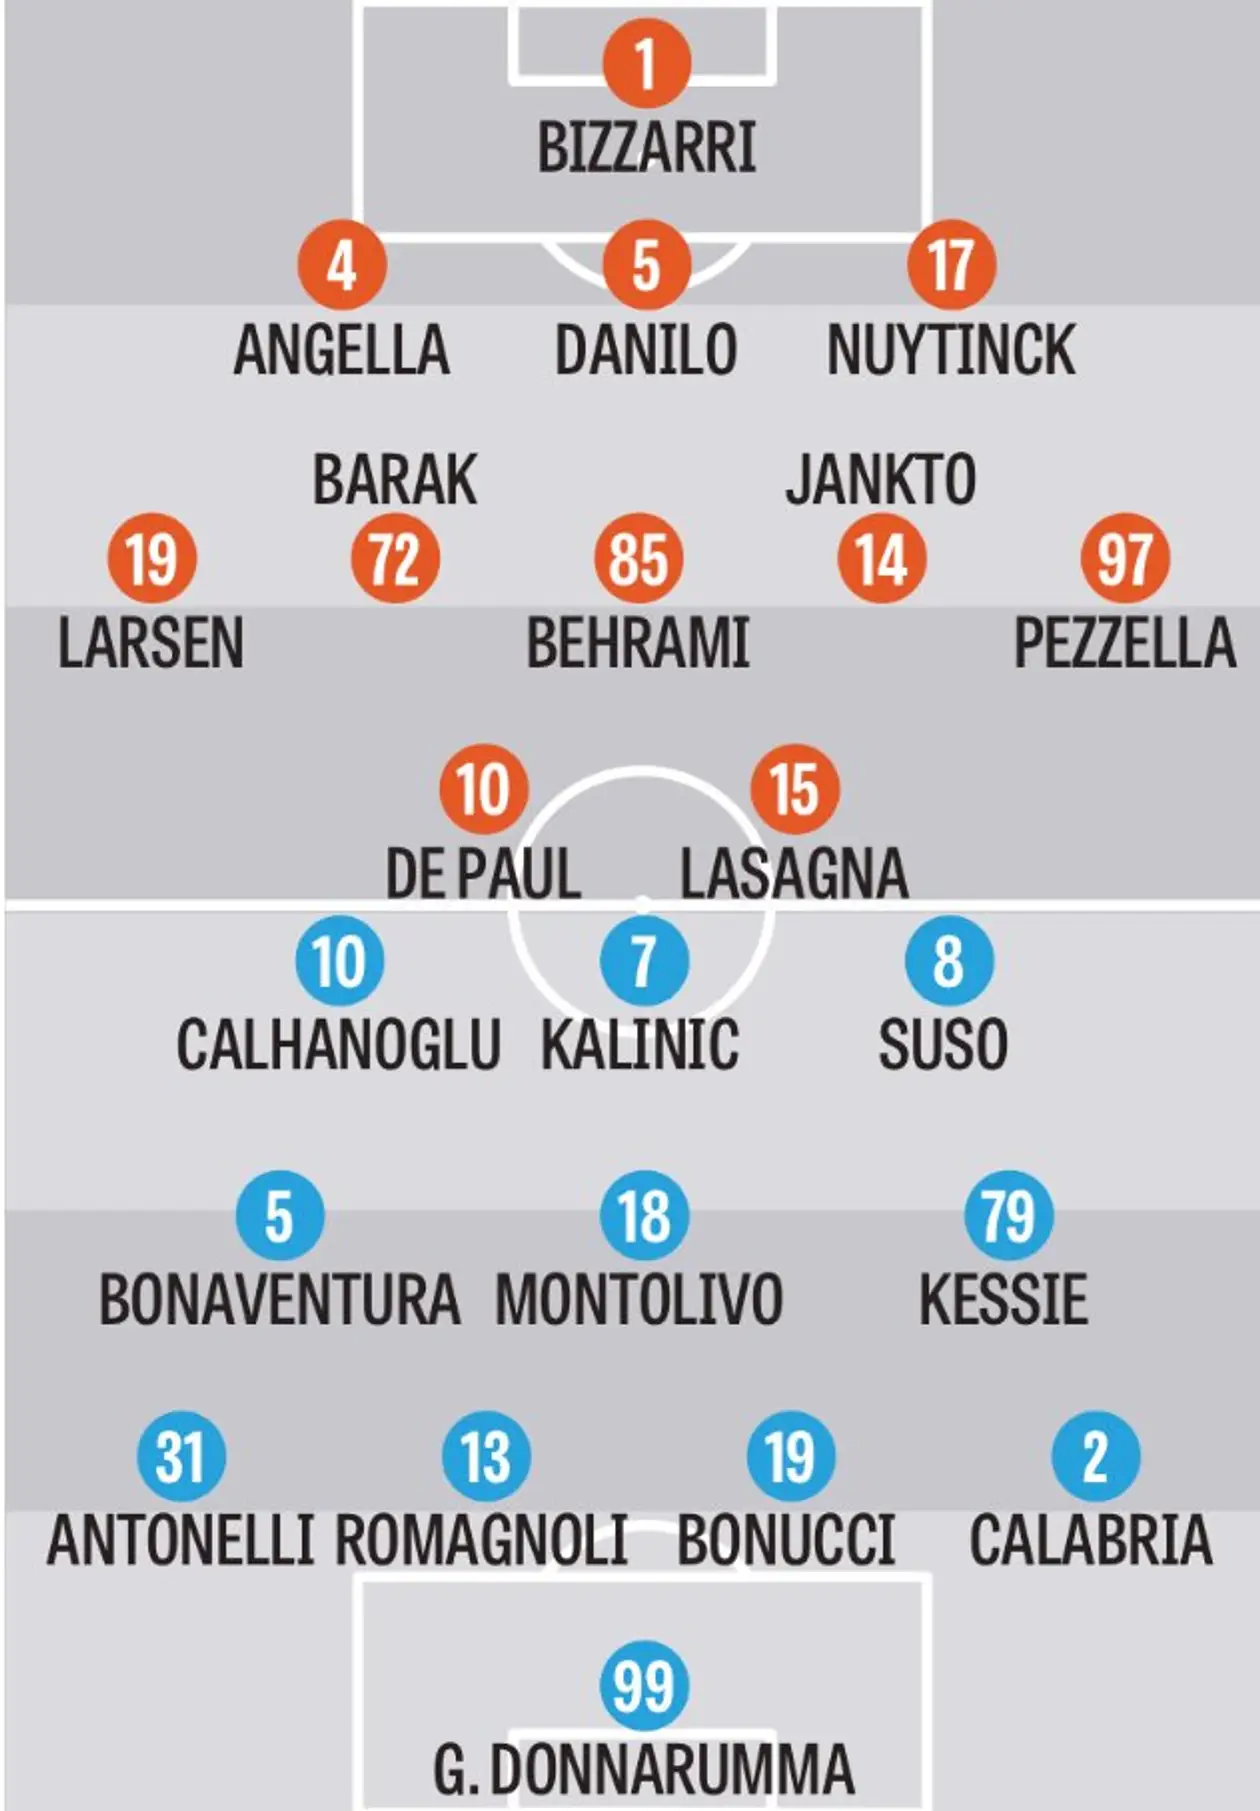 Вероятные стартовые составы на матч «Удинезе» — «Милан», версия издания Gazzetta dello Sport